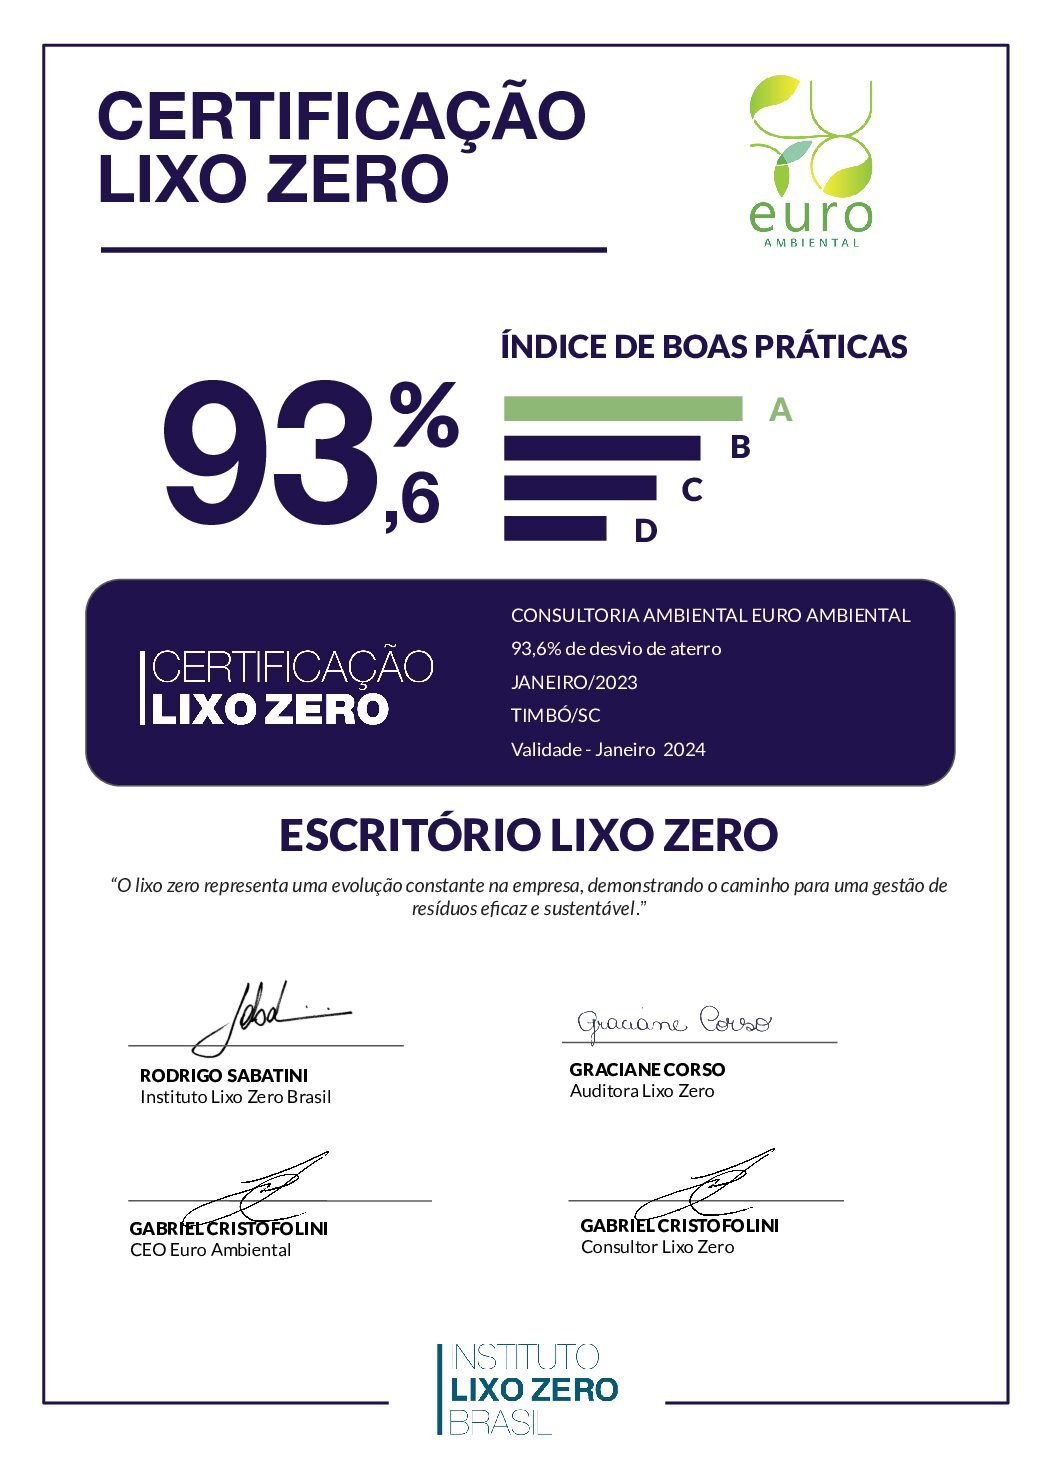 Cópia de CertificacaoLixoZero_EuroAmbiental_2022